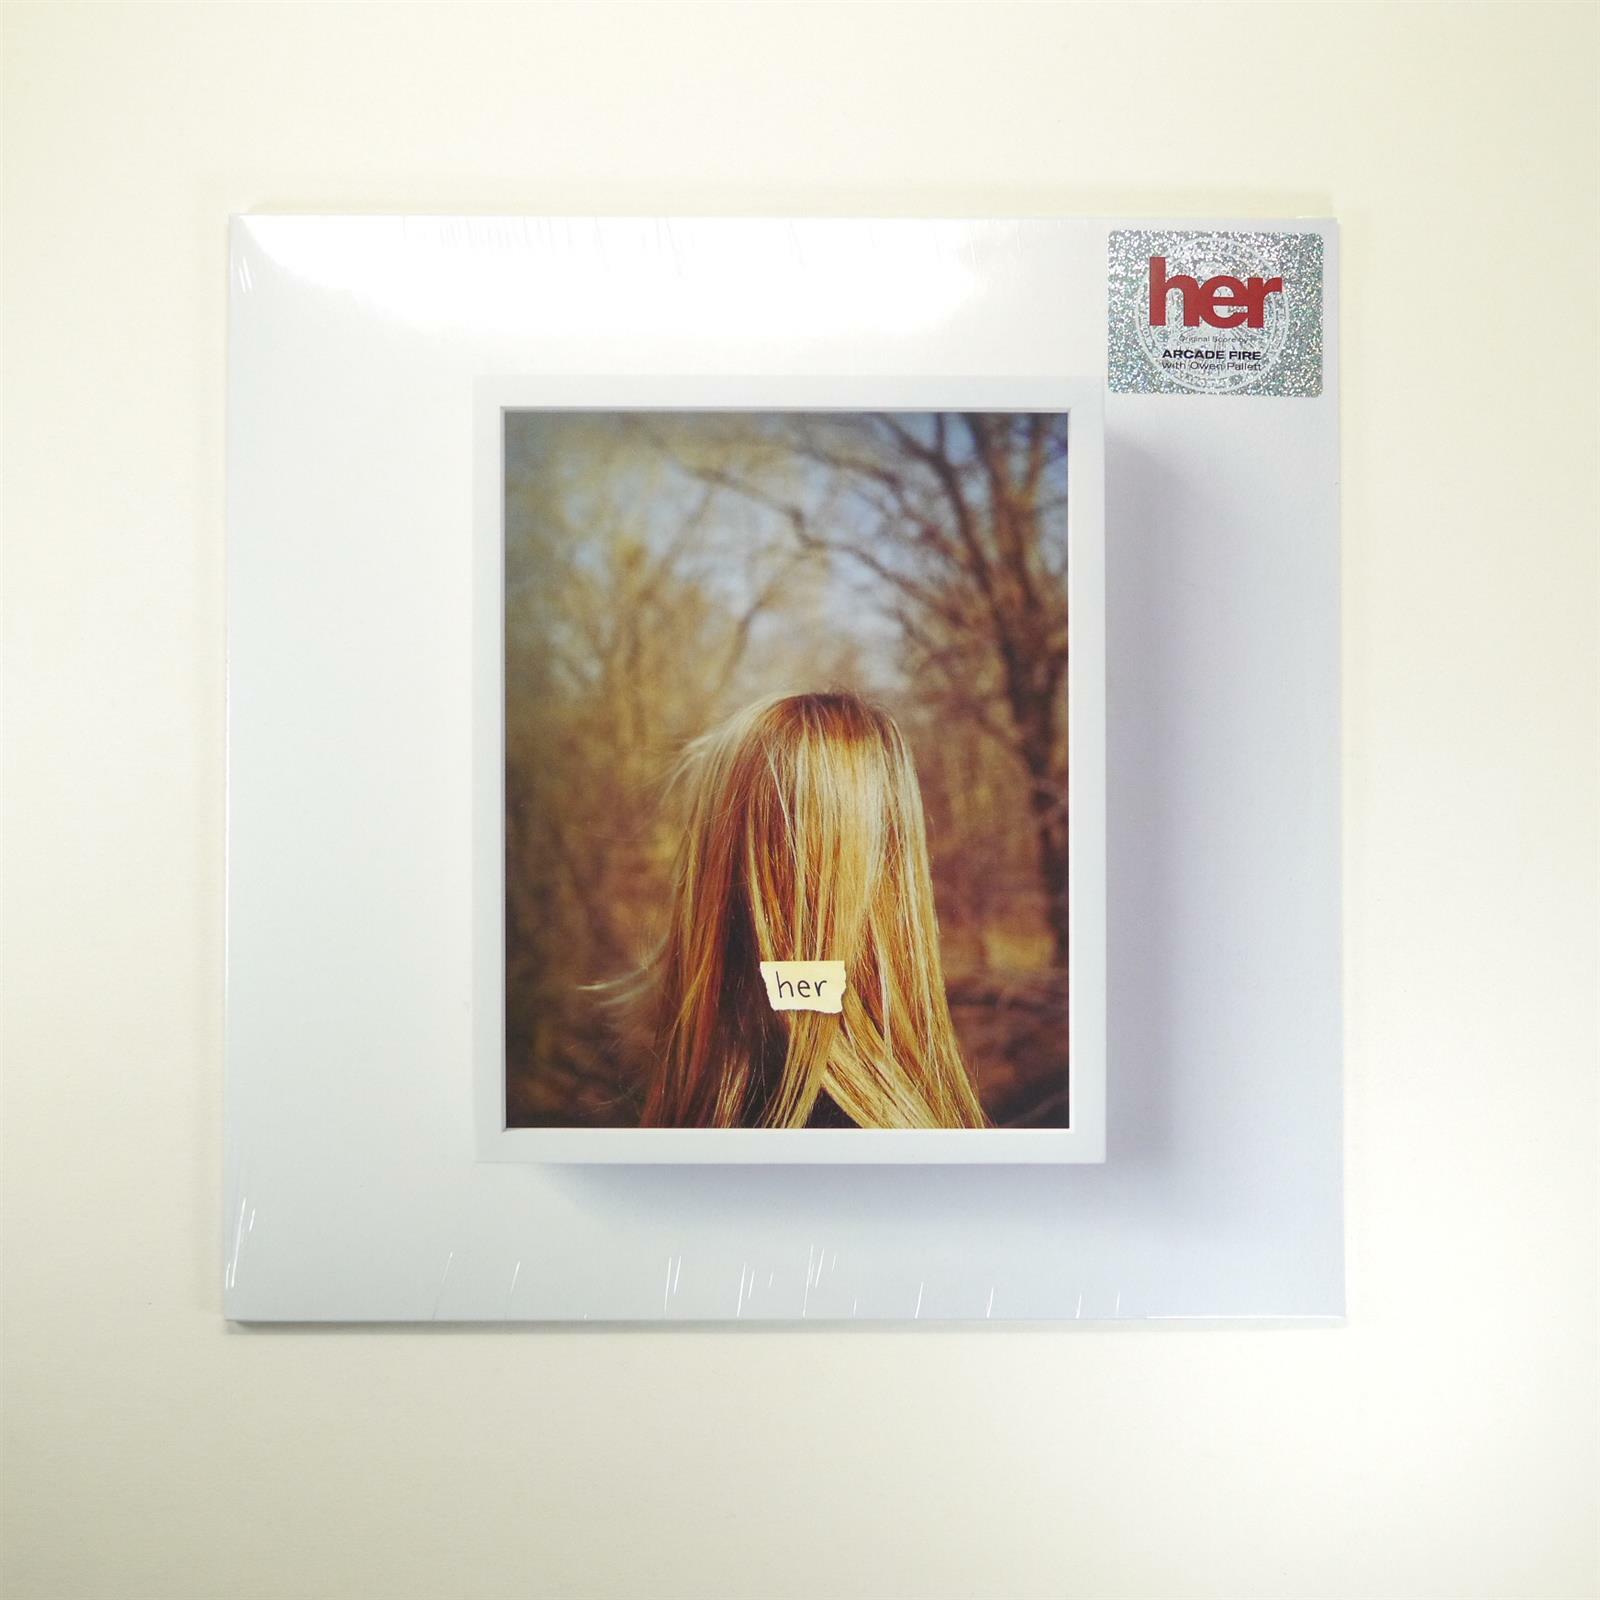 [중고] [수입] Arcade Fire - Her (Original Motion Picture Soundtrack)[WHITE LP]